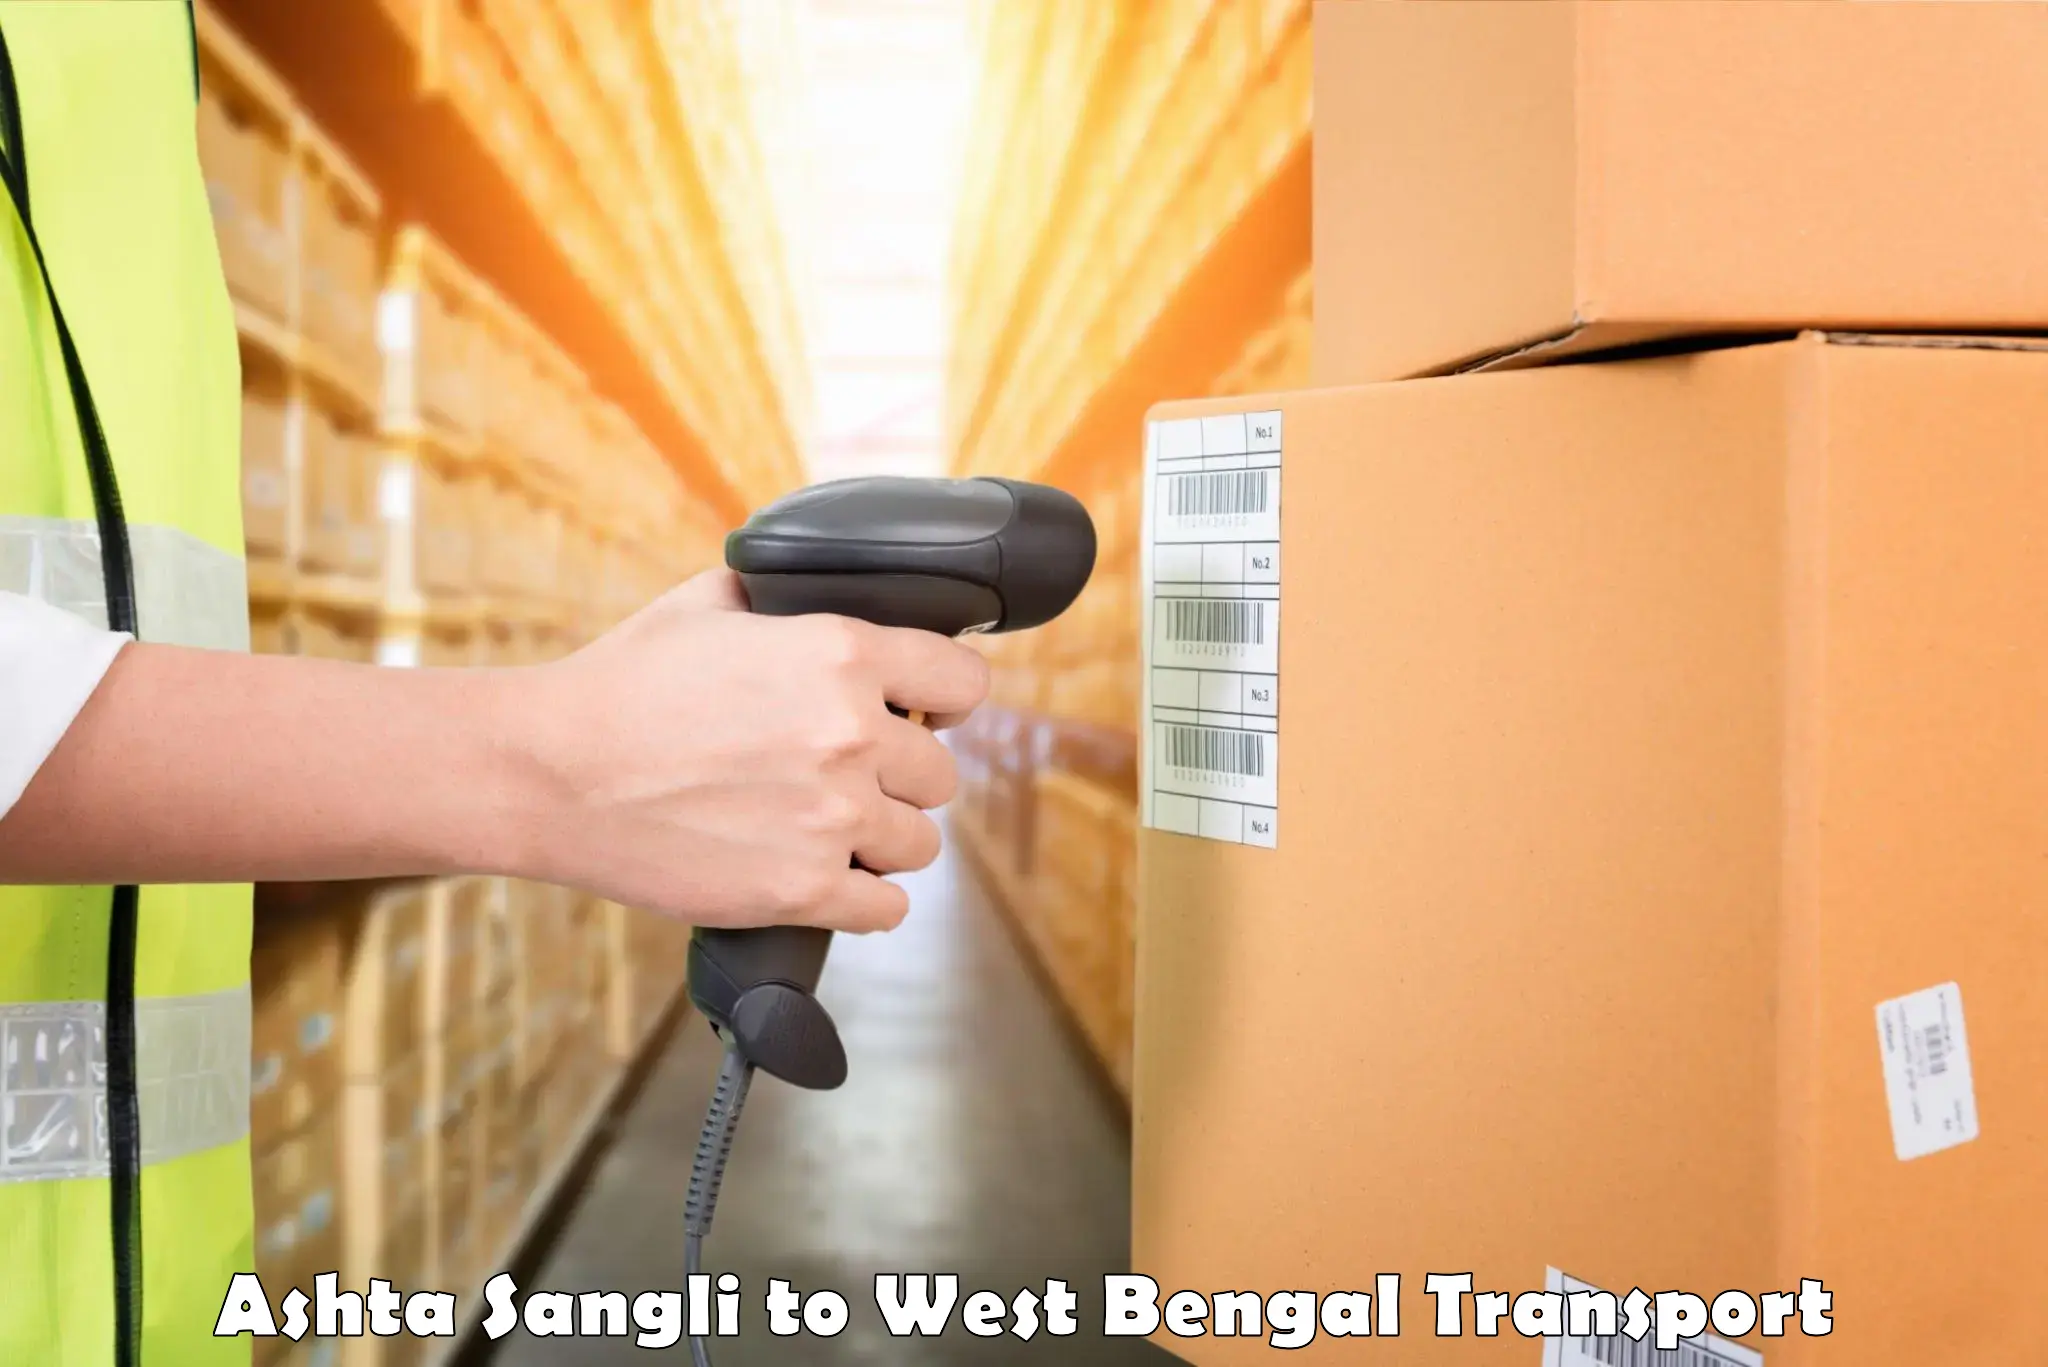 Container transport service Ashta Sangli to Dankuni